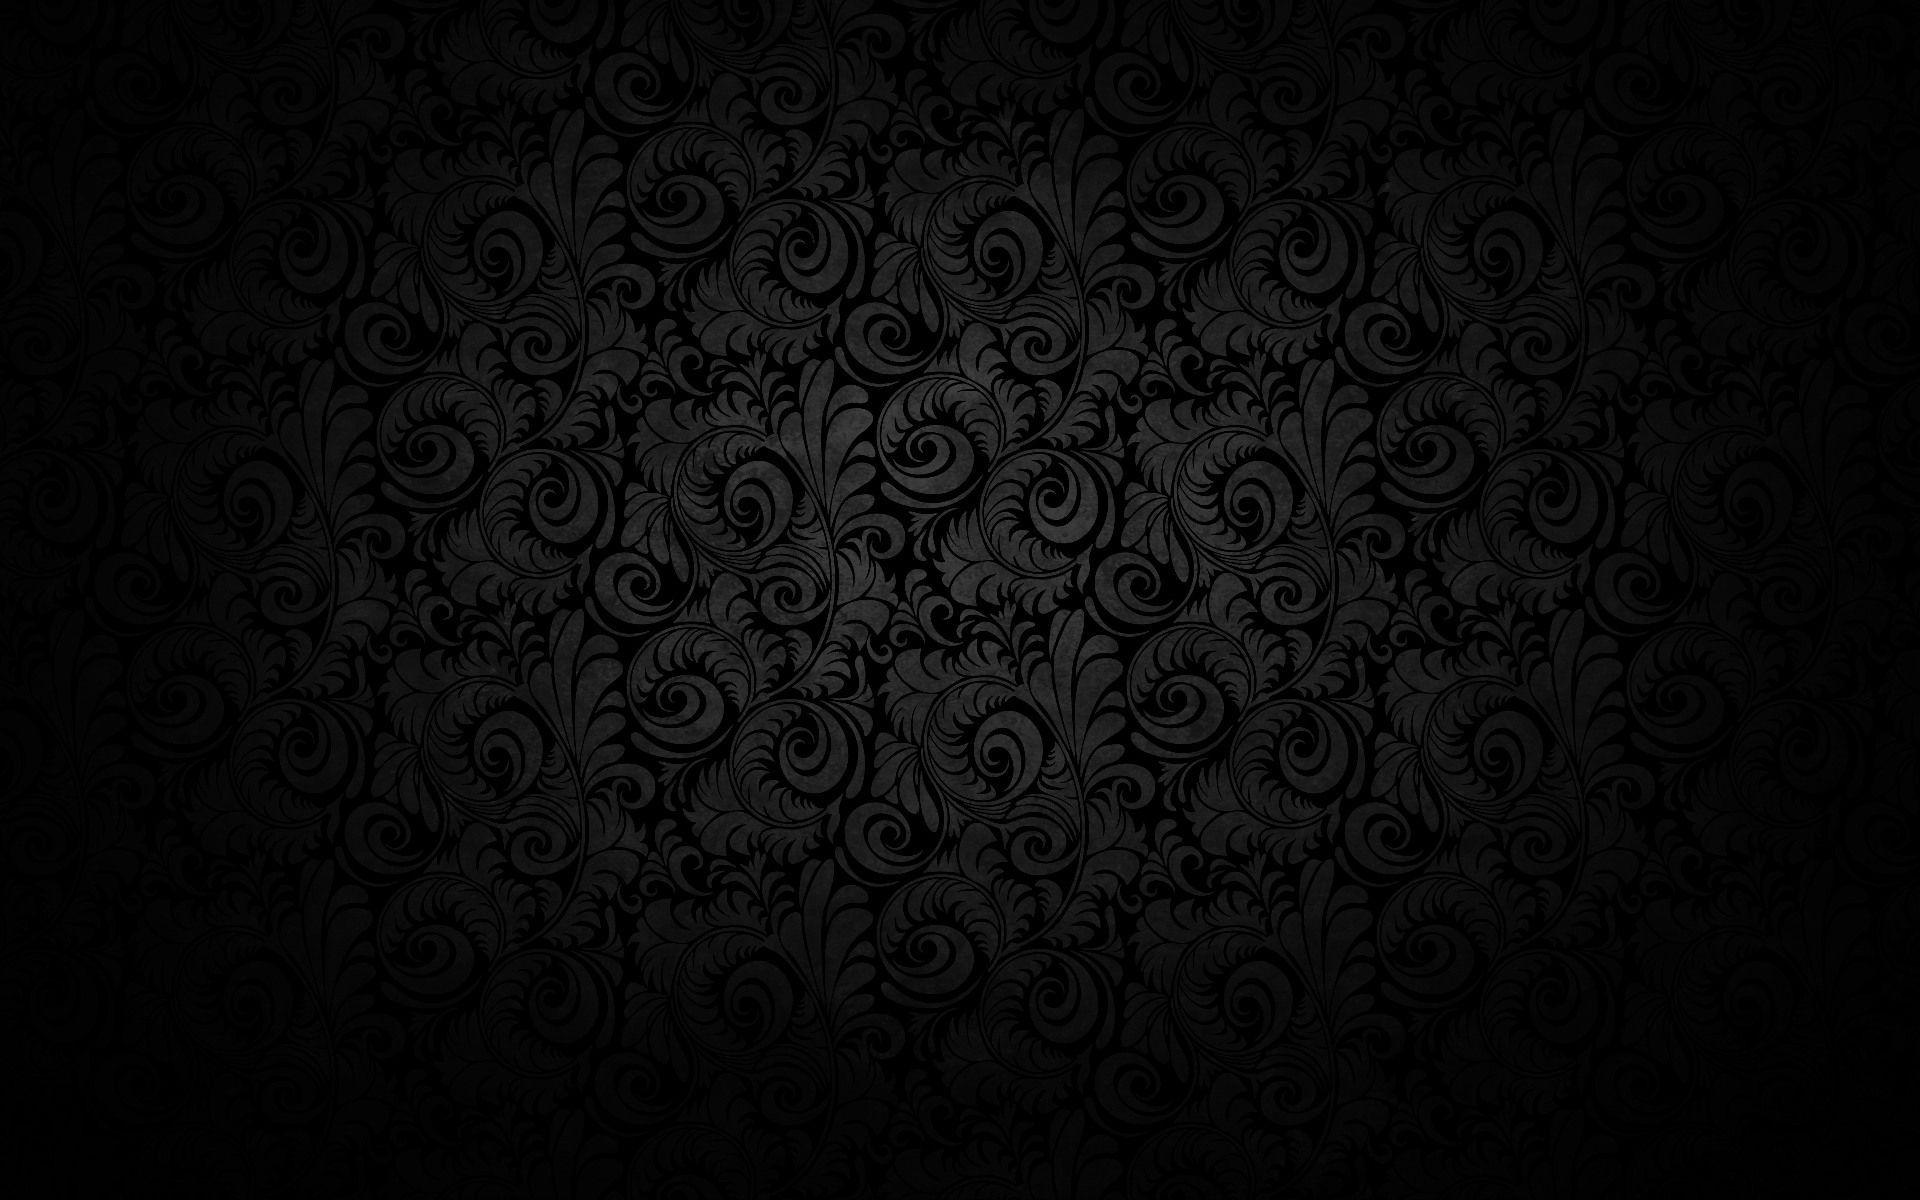 motifs #noir #baroque. Wallpaper. Wallpaper, Wall